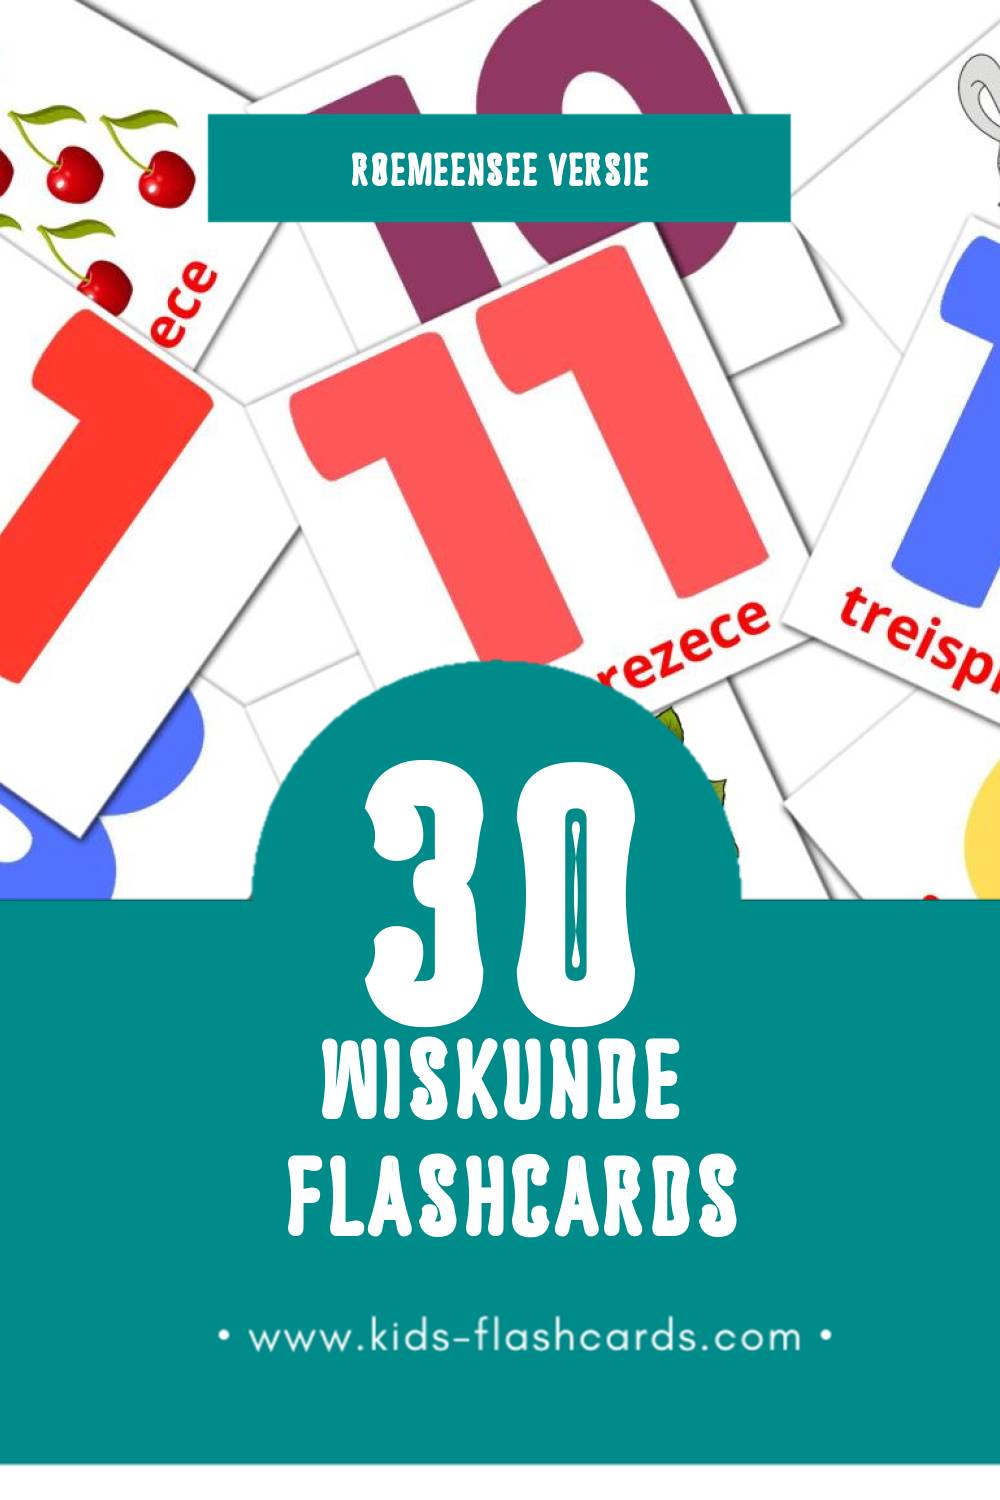 Visuele Matematică Flashcards voor Kleuters (30 kaarten in het Roemeense)